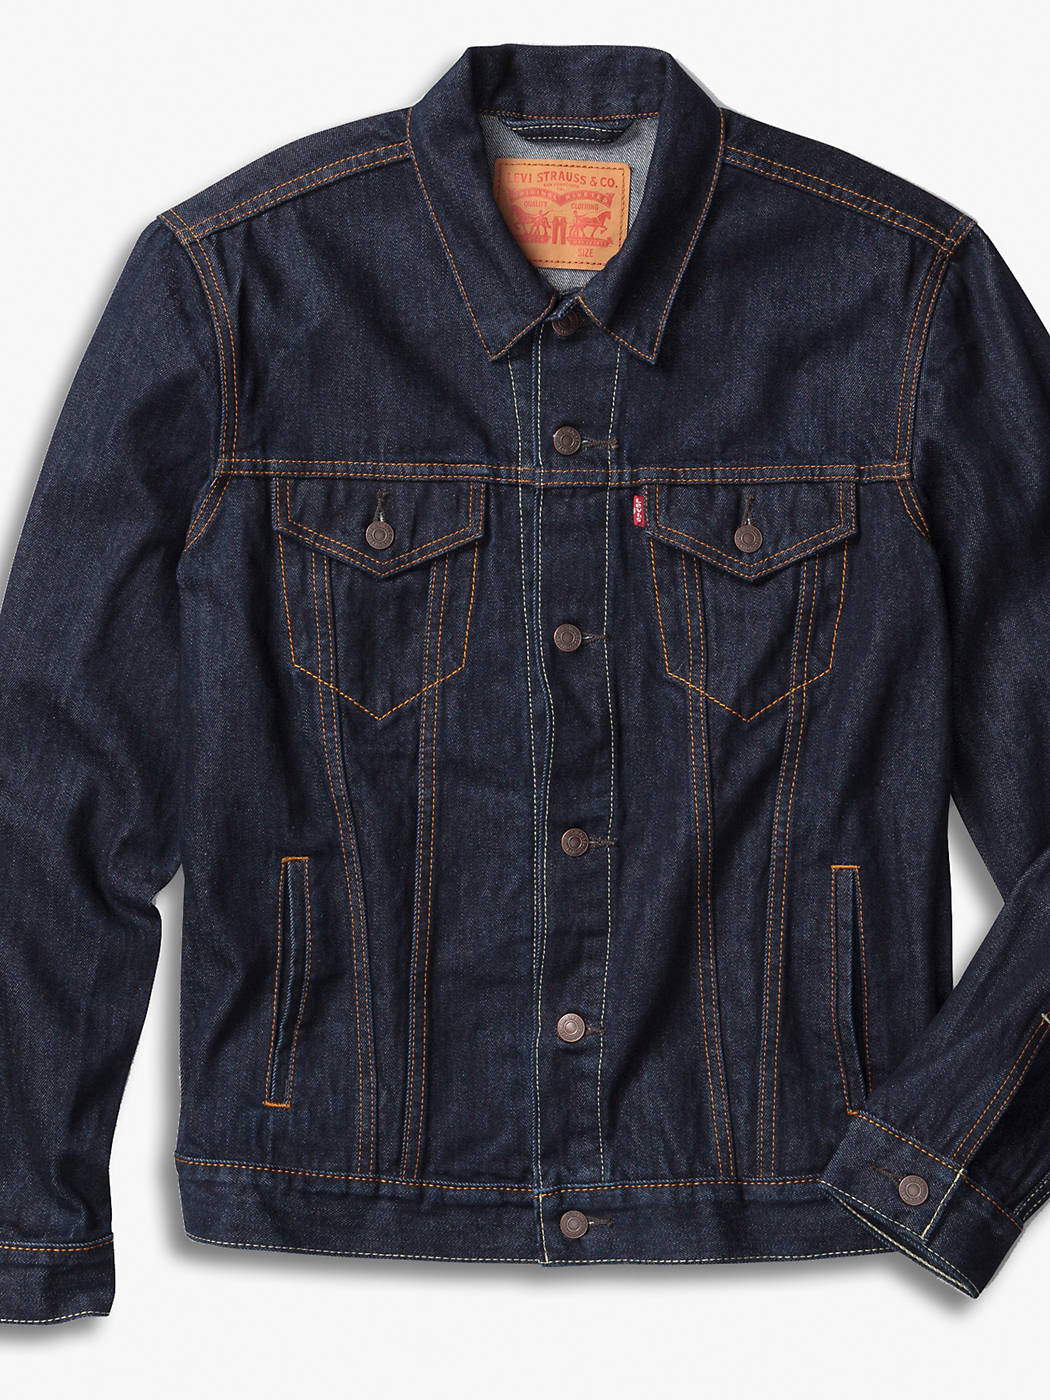 Levi's Trucker Jacket - Rinse Dark Wash – Ascent Wear